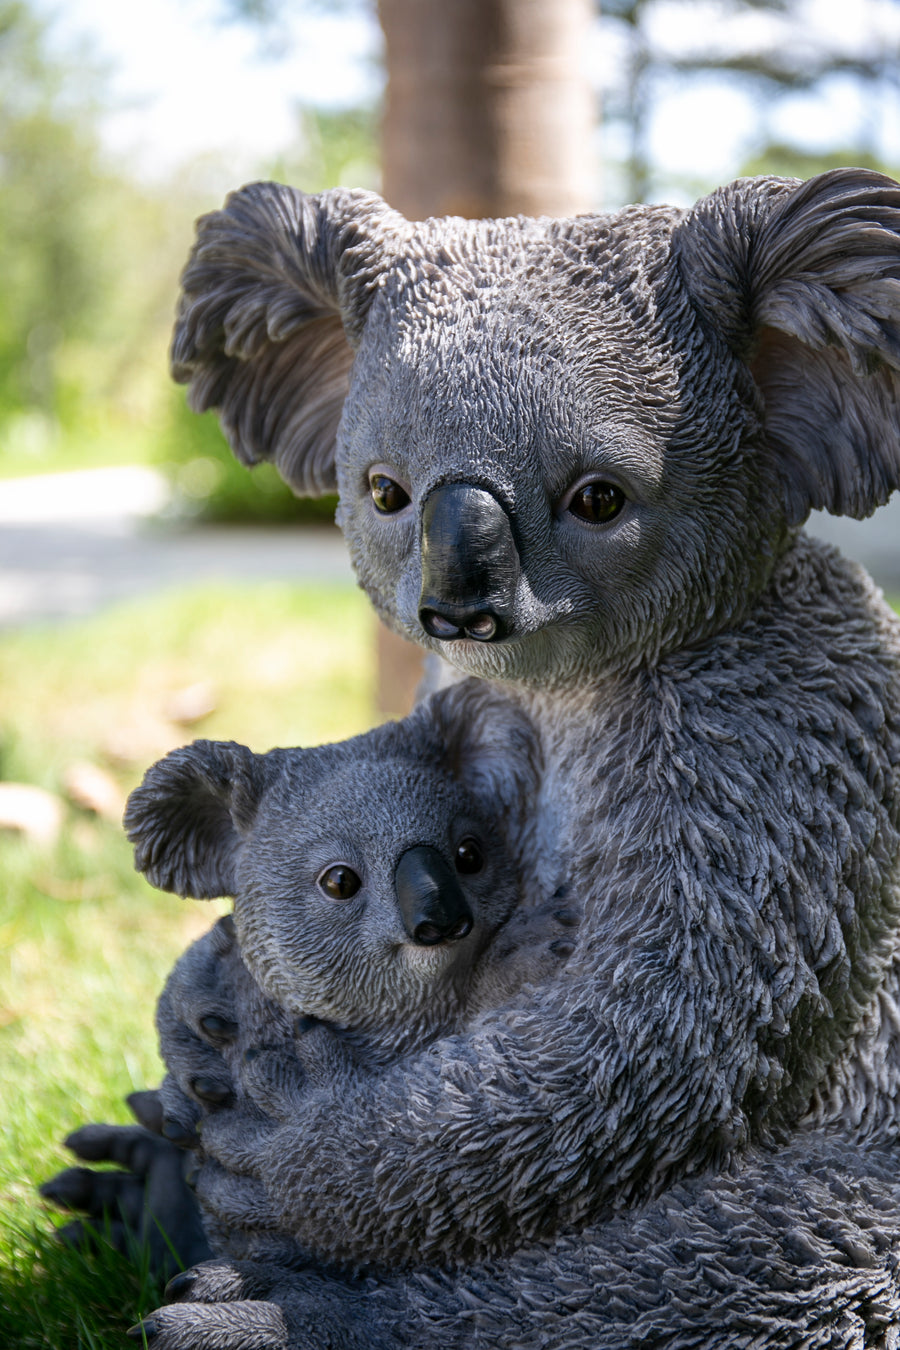 Mother & Baby Koala HI-LINE GIFT LTD.